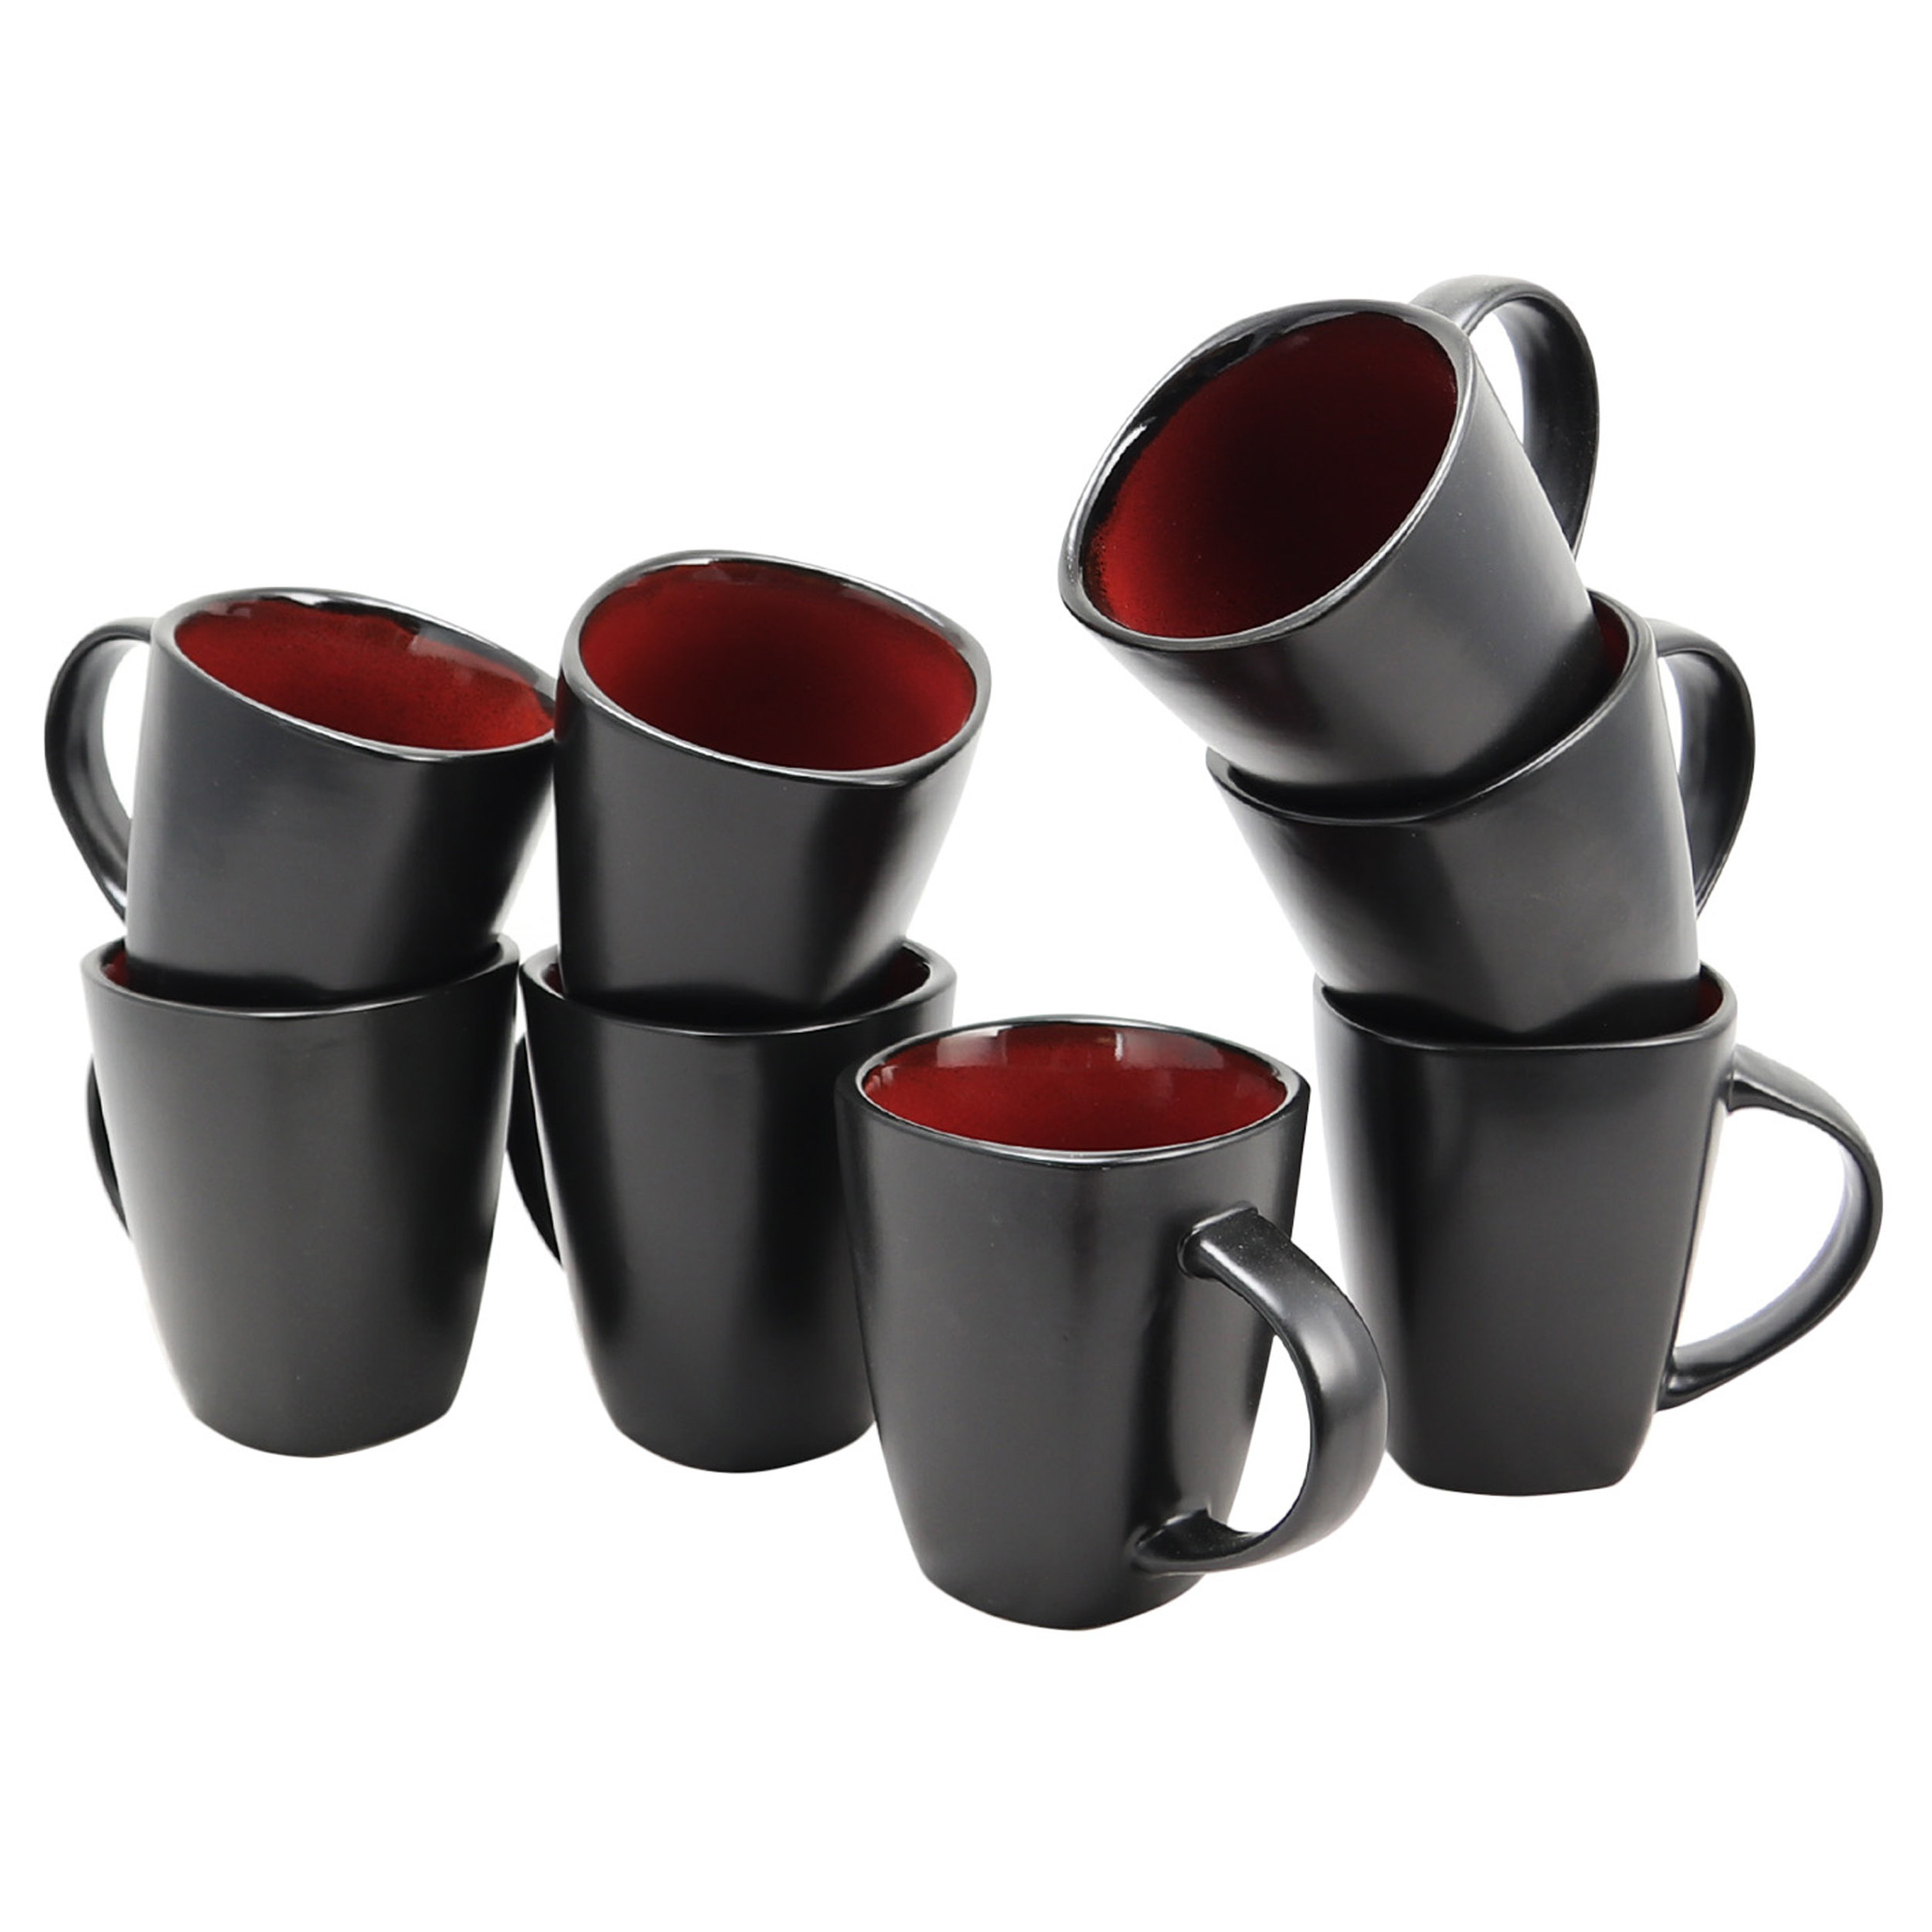 https://assets.wfcdn.com/im/33234341/compr-r85/2187/218743976/soho-ceramic-coffee-mug.jpg